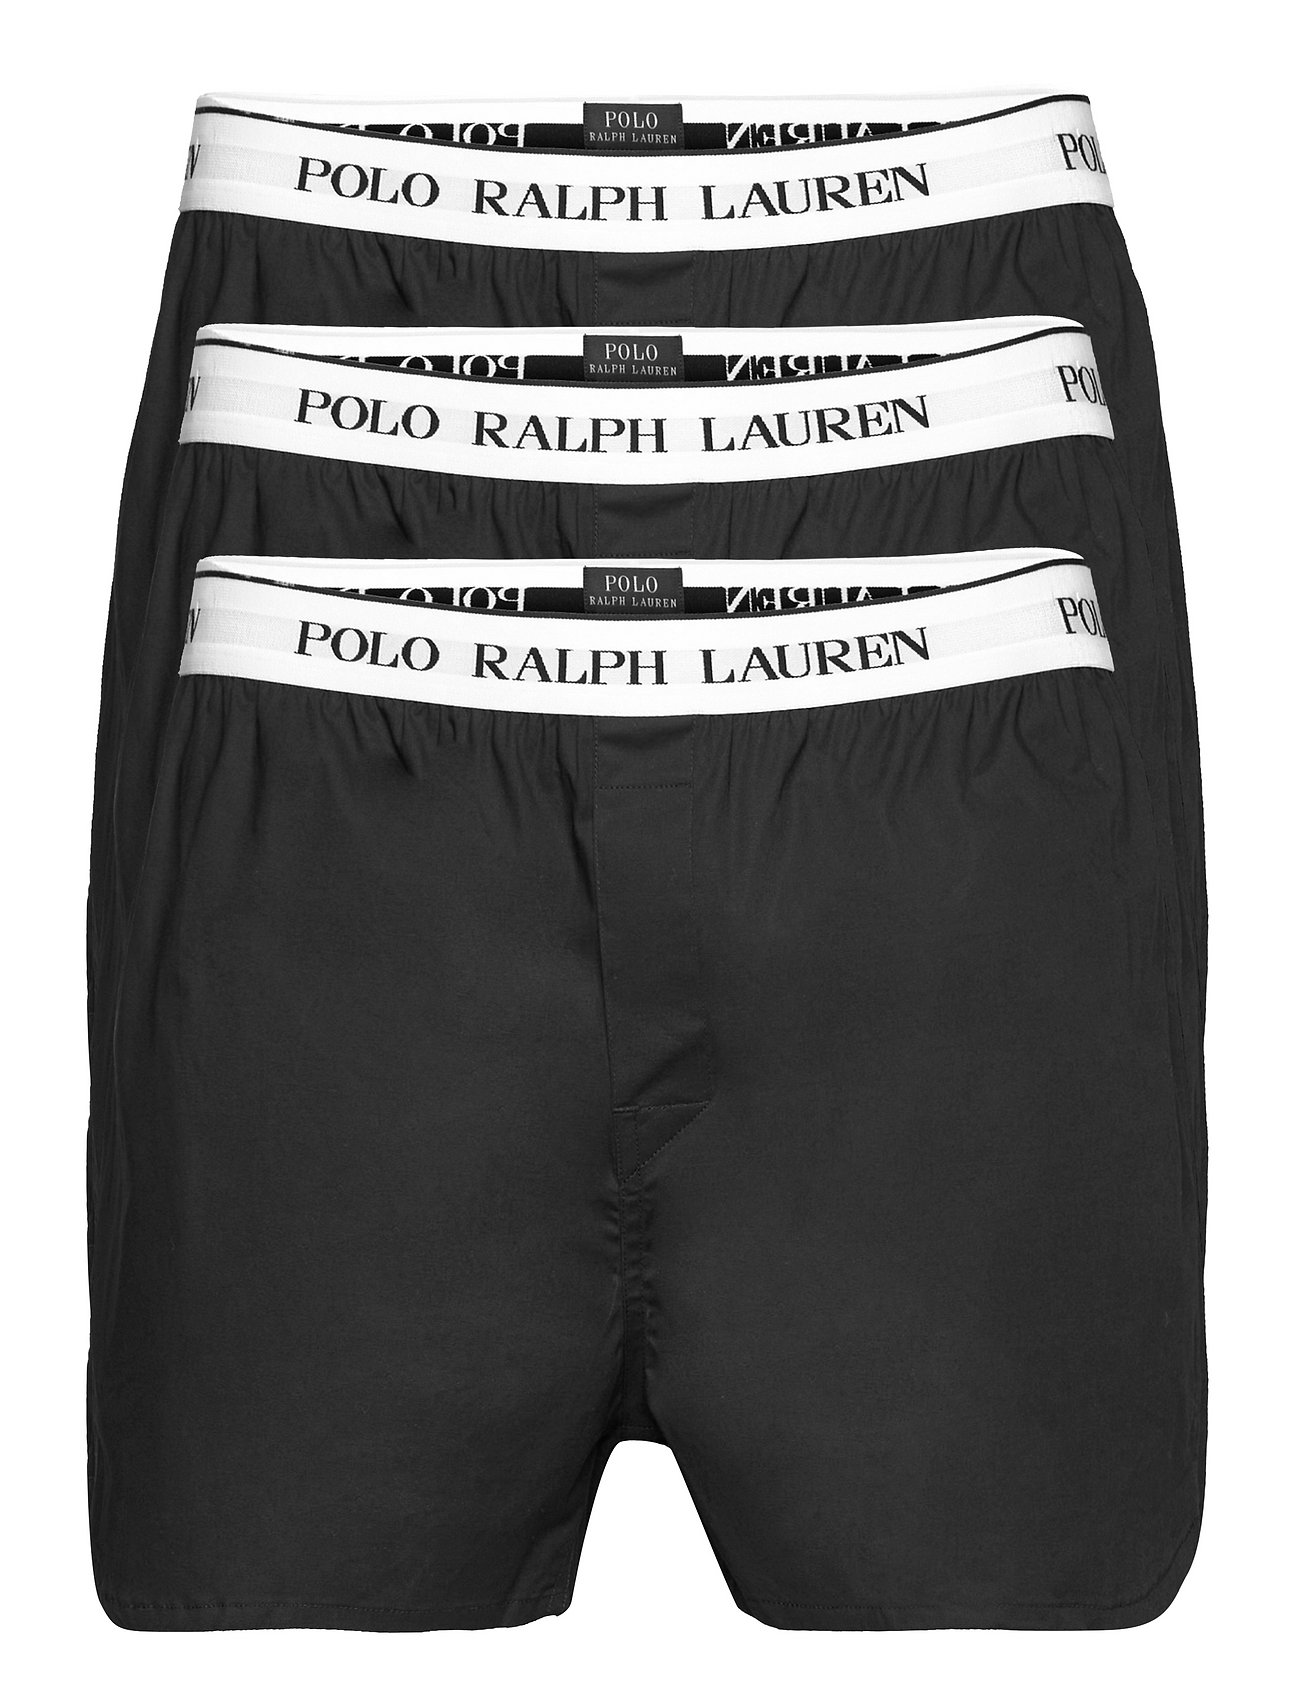 Polo Ralph Lauren Underwear Stretch Cotton Boxer 3-pack - Underpants 